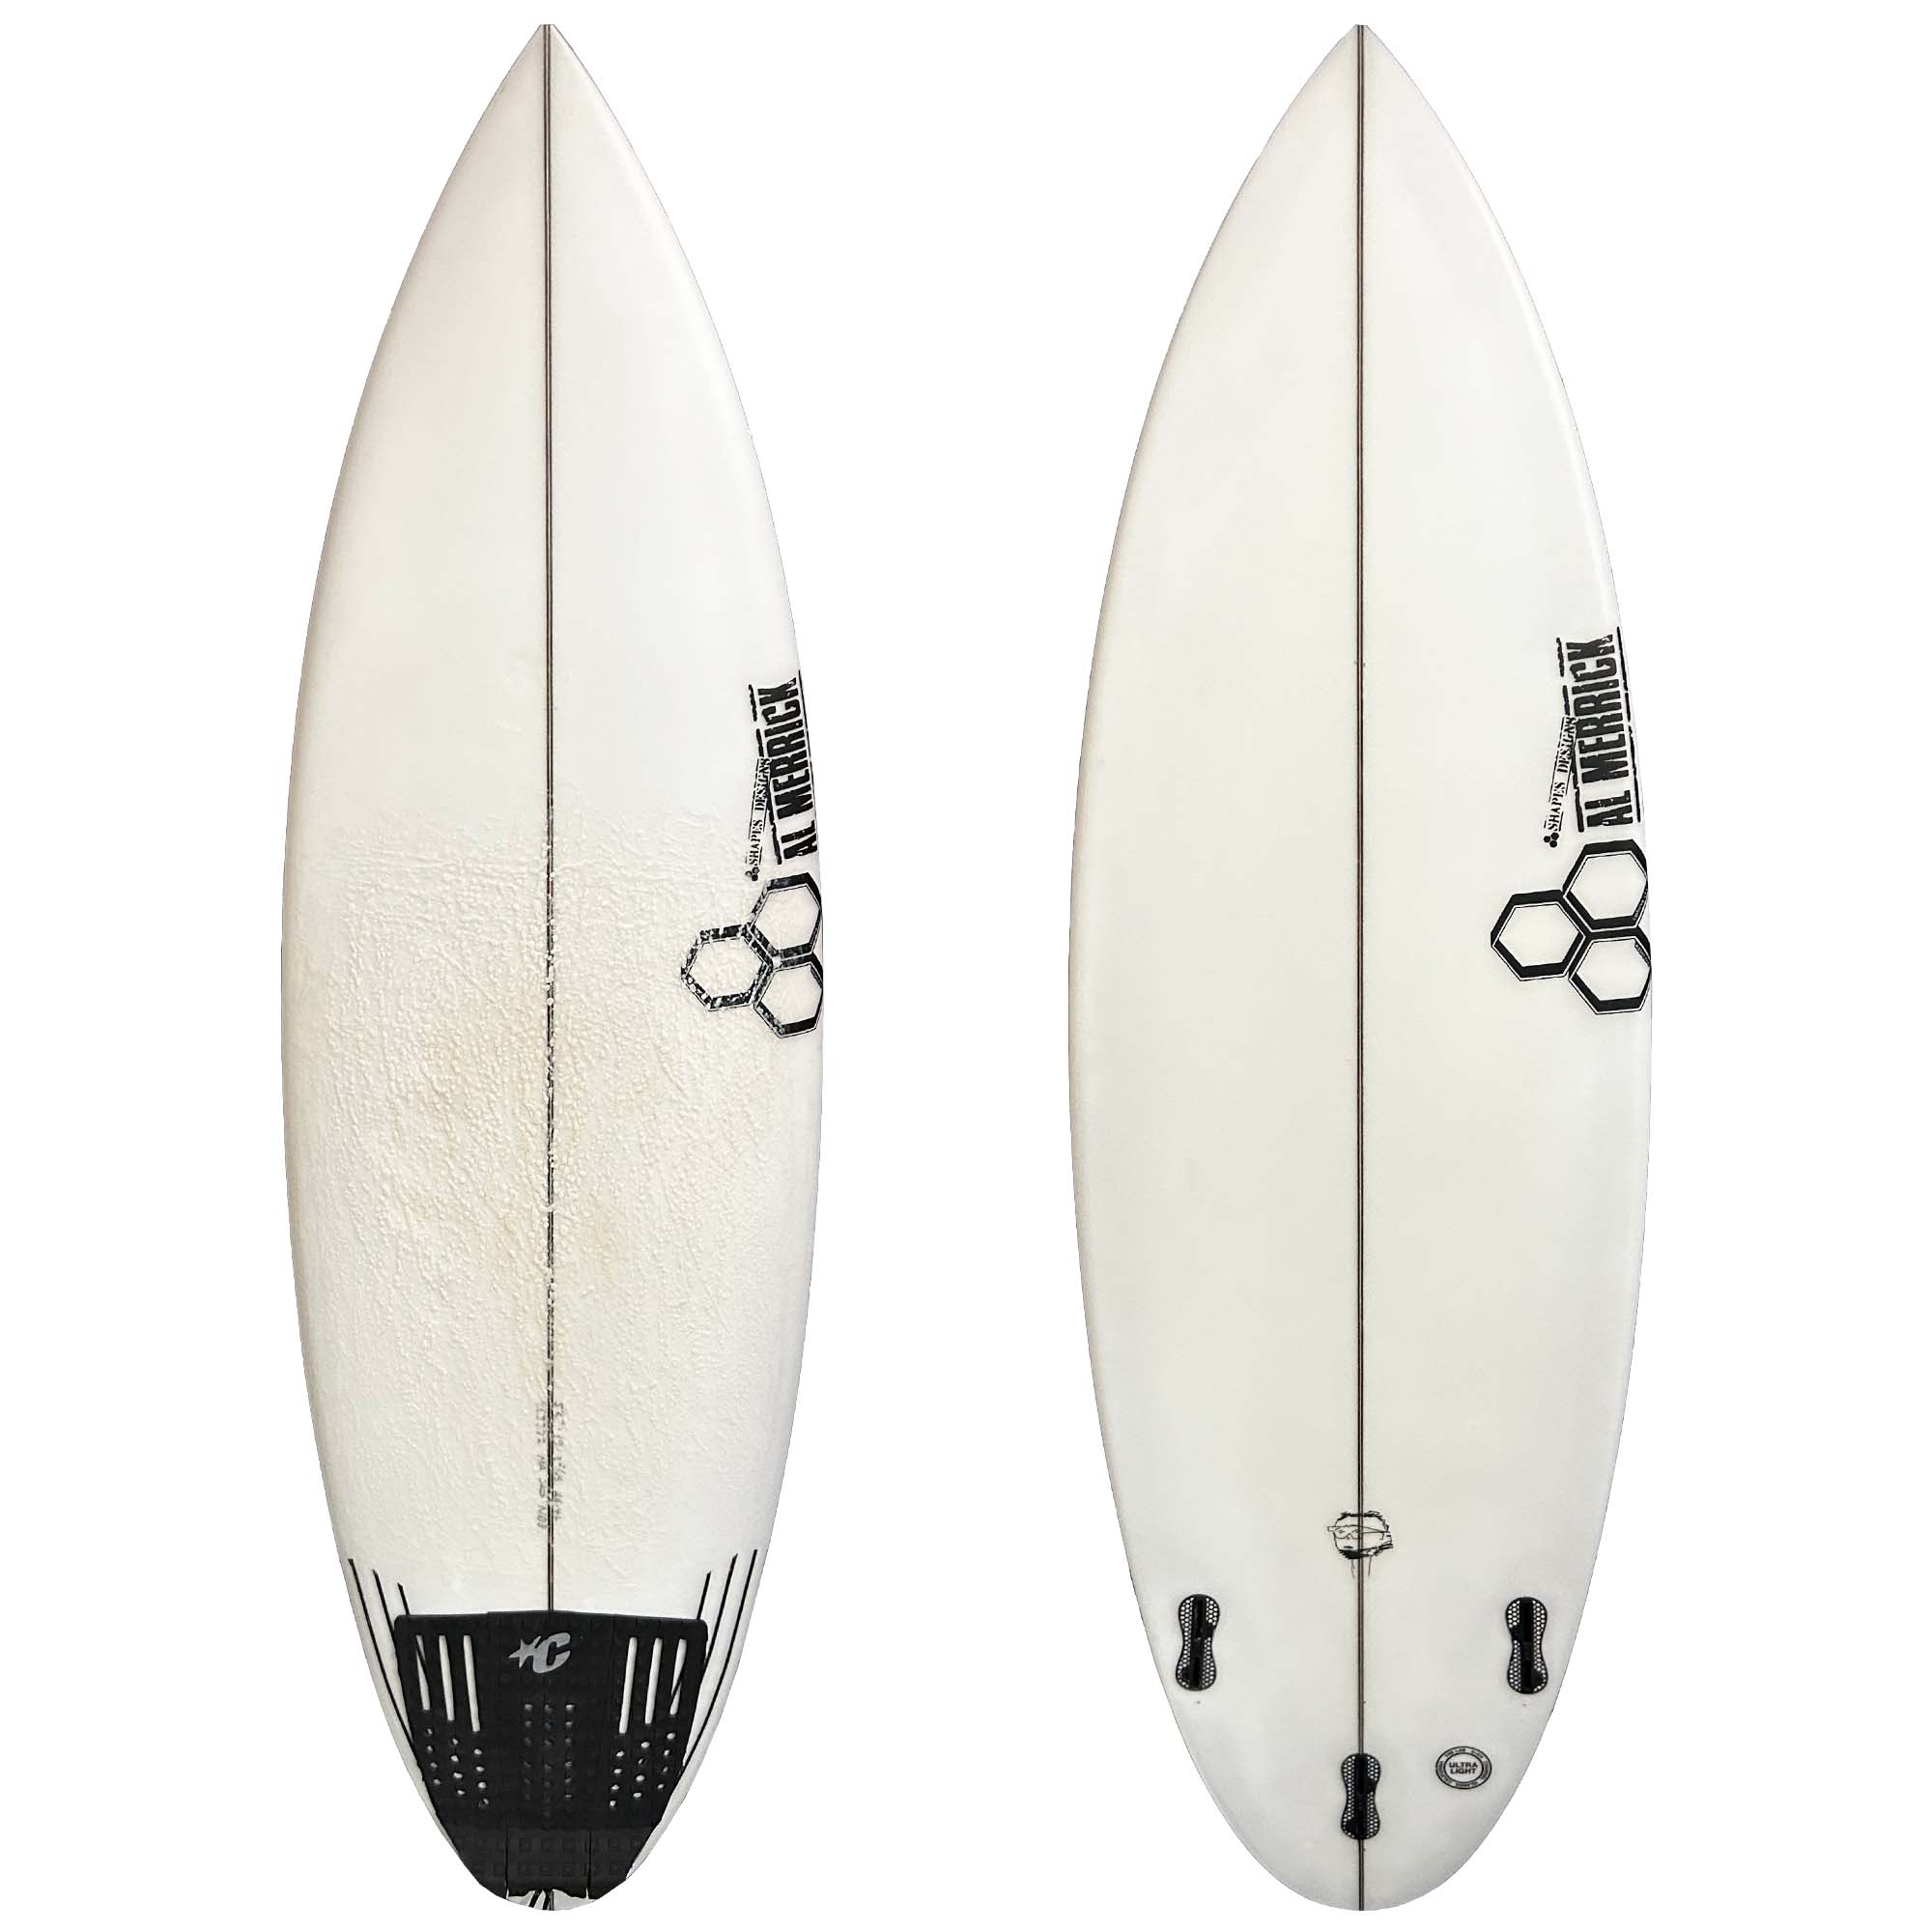 Channel Islands Neck Beard 3 5'6 Used Surfboard